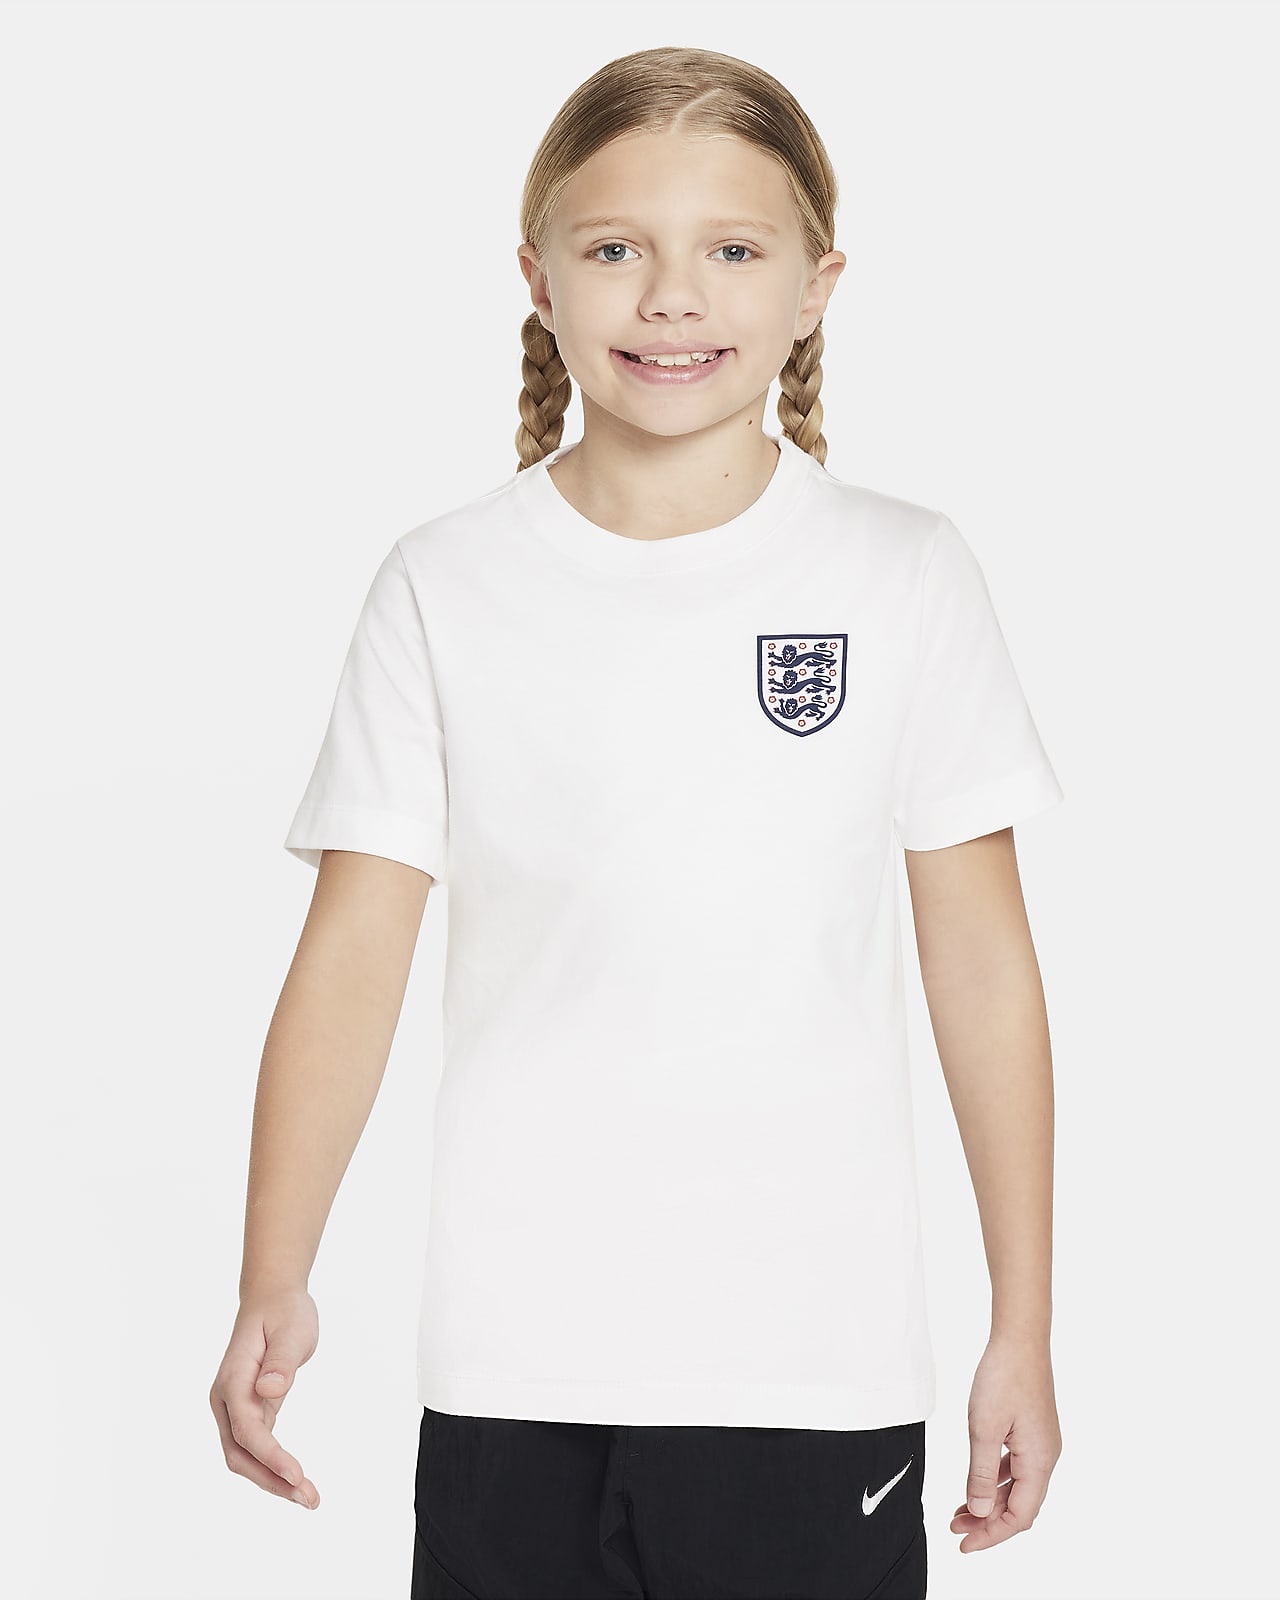 Engeland Nike voetbalshirt voor kids